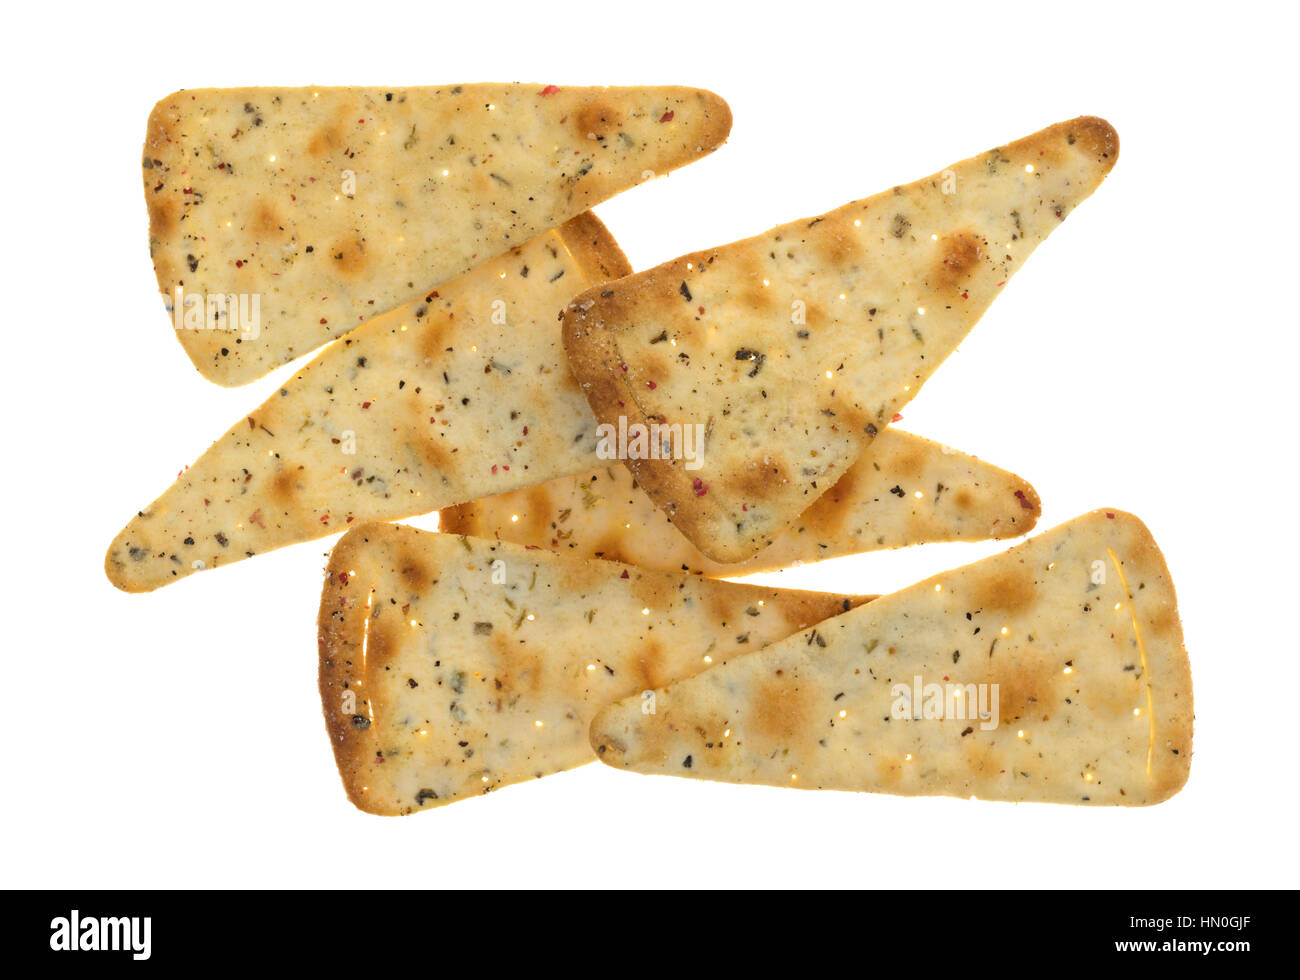 Draufsicht von erfahrenen Pizza Kruste Chips isoliert auf einem weißen Hintergrund. Stockfoto